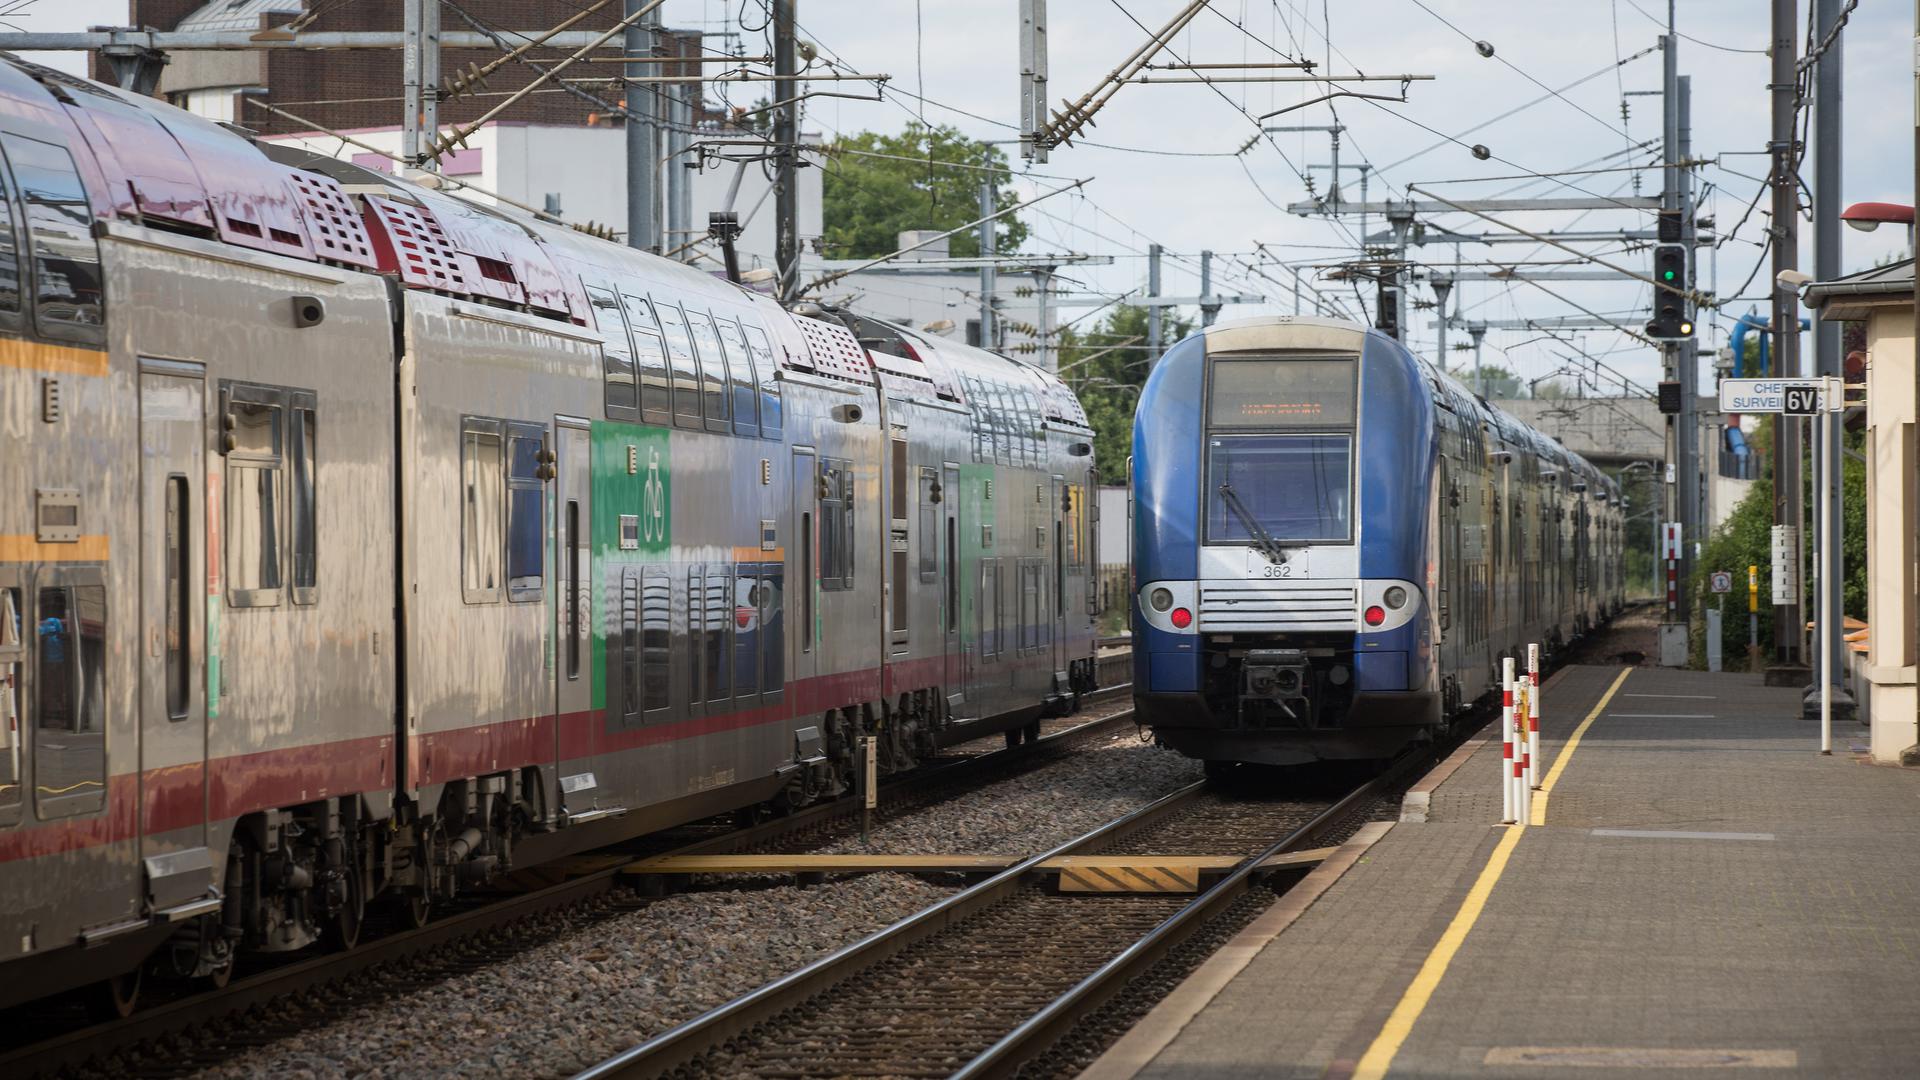 Segunda-feira, 13 de março, vai ser mais um dia complicado para os passageiros da linha TER, por causa da greve. 